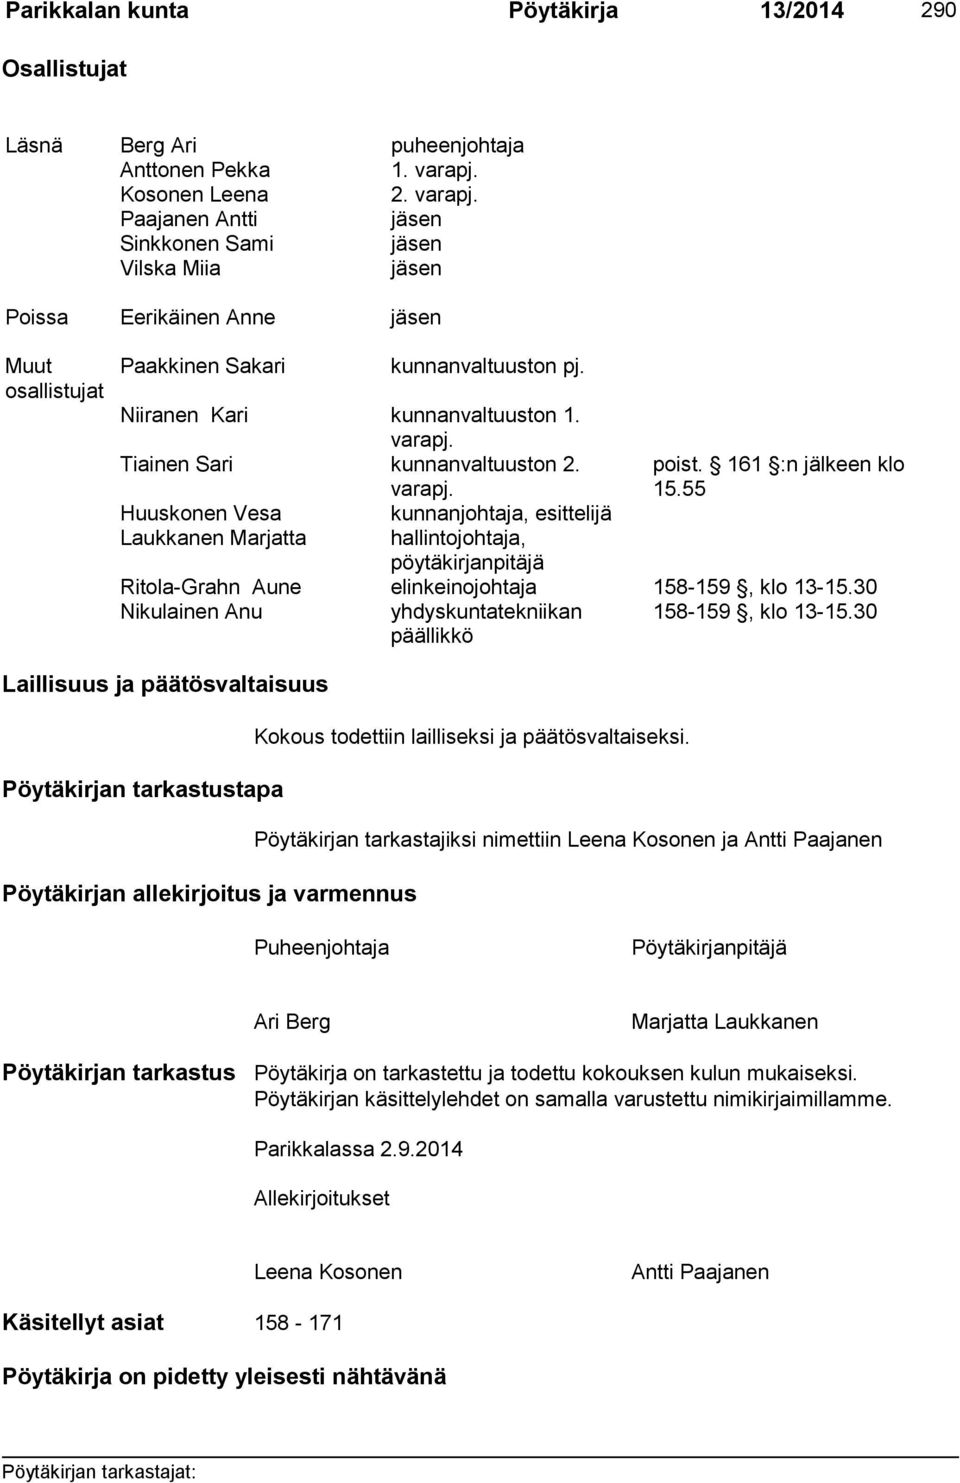 Niiranen Kari kunnanvaltuuston 1. varapj. Tiainen Sari kunnanvaltuuston 2. varapj. poist. 161 :n jälkeen klo 15.